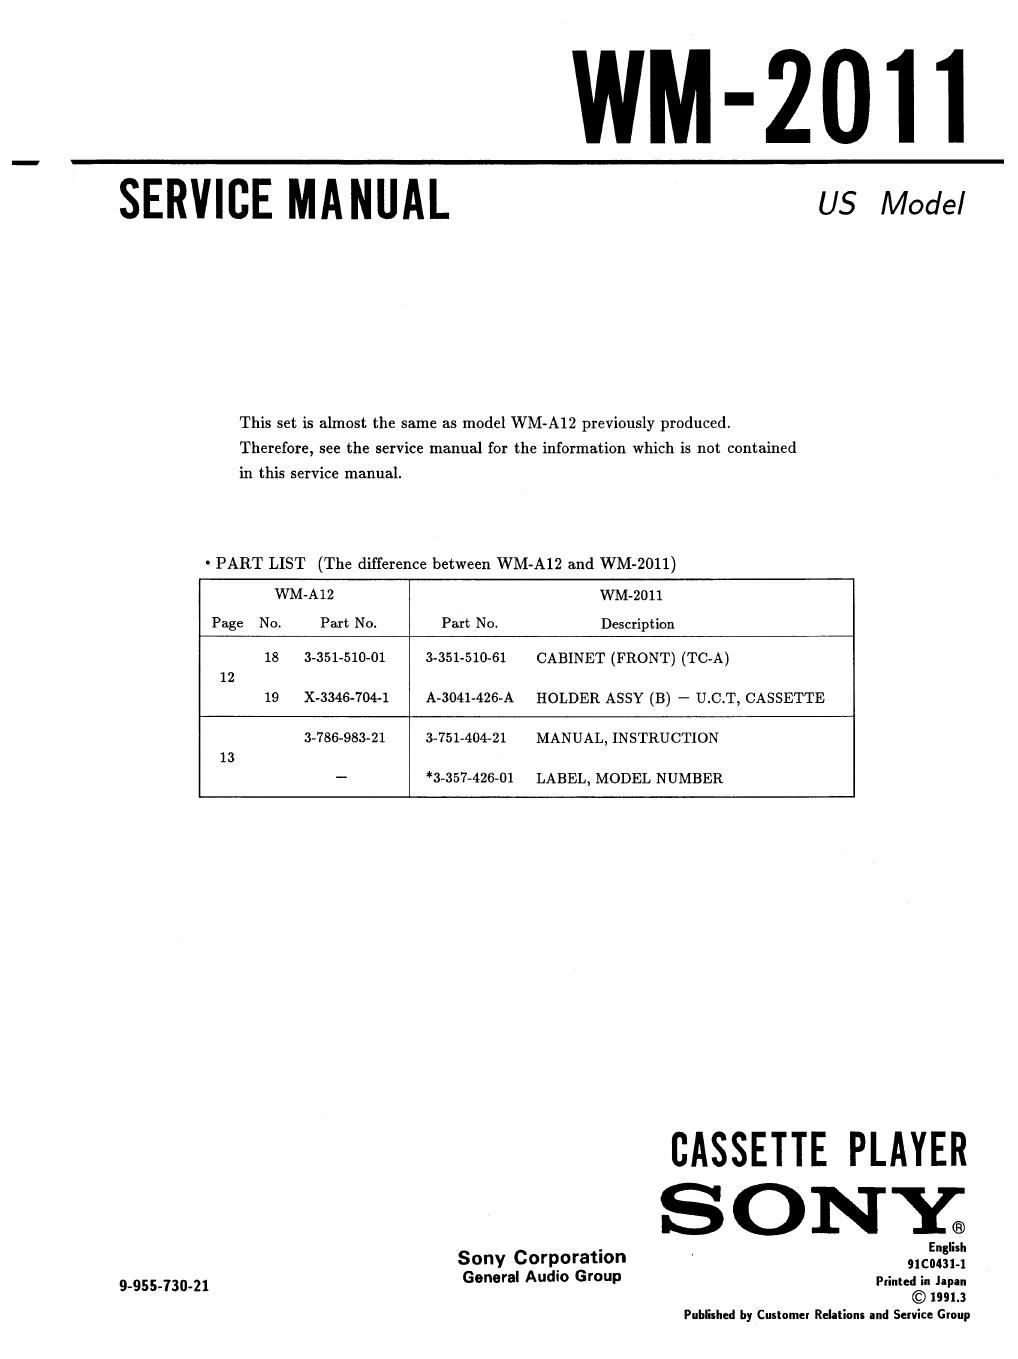 sony wm 2011 service manual